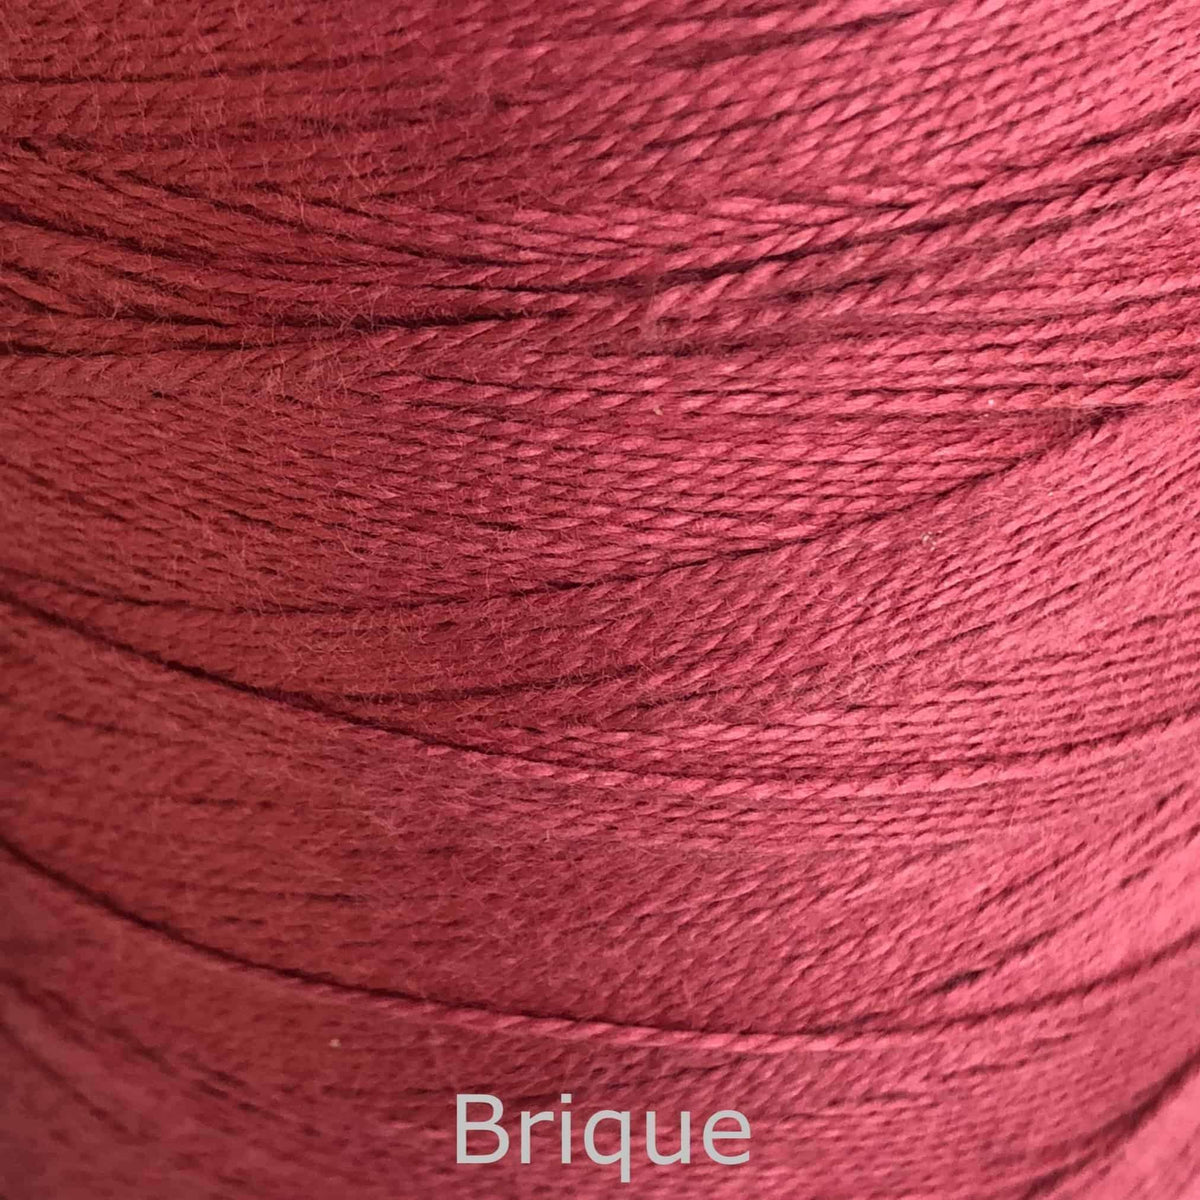 16/2 cotton weaving yarn brique